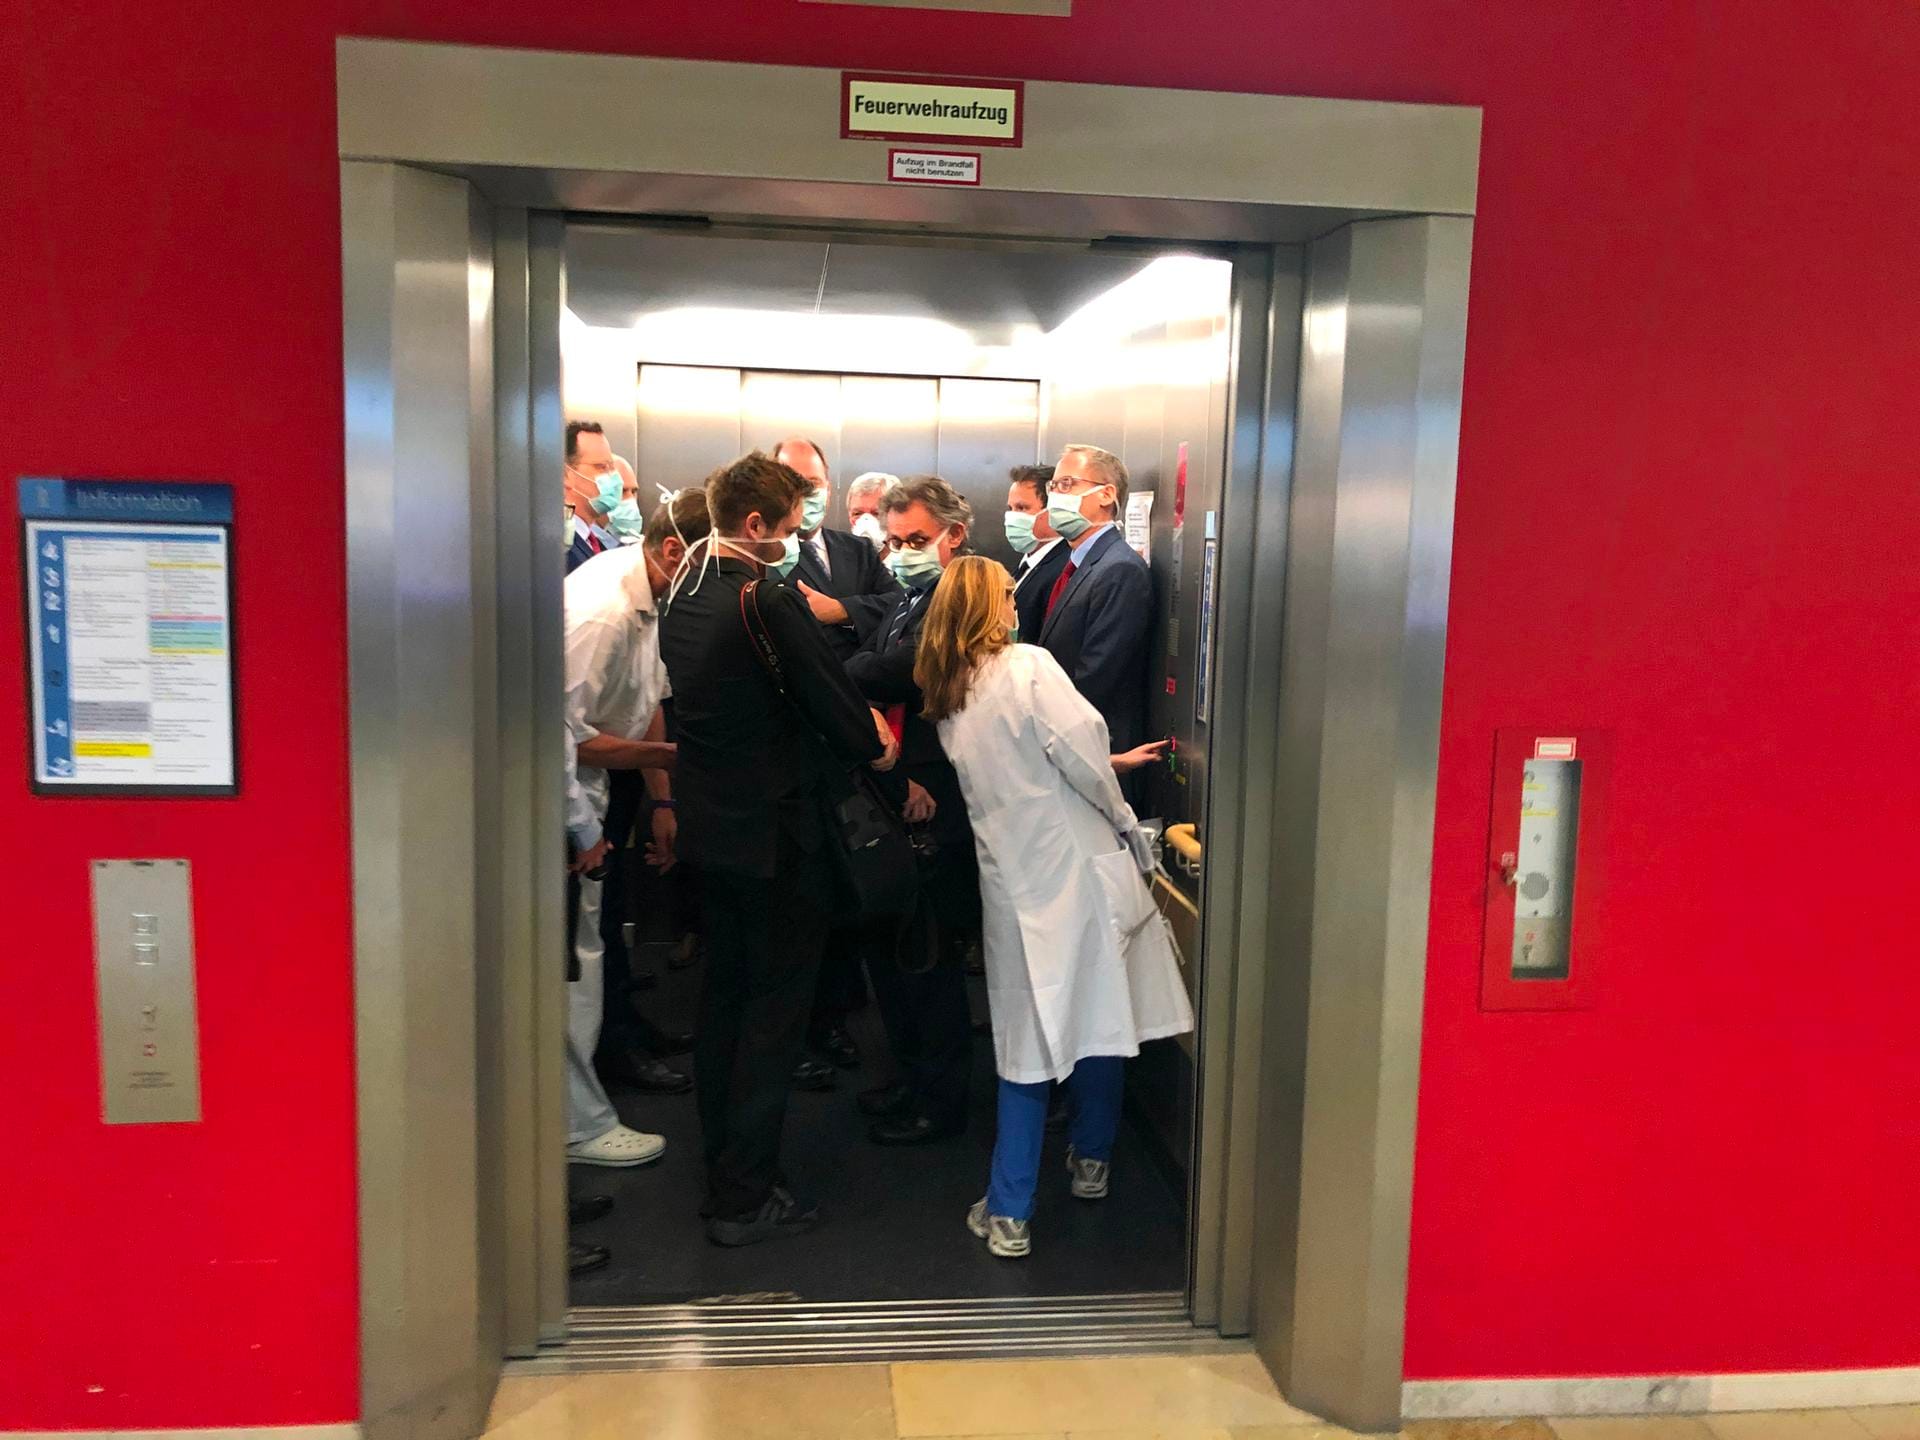 Bei einem Besuch der Uniklinik Gießen drängen sich Bundesgesundheitsminister Jens Spahn und Hessens Ministerpräsident Volker Bouffier mit Begleitern in einem Fahrstuhl: Spahn sagte im Nachhinein einsichtig, selbst wenn man Mundschutz trage, sei es wichtig, Abstand zu halten.